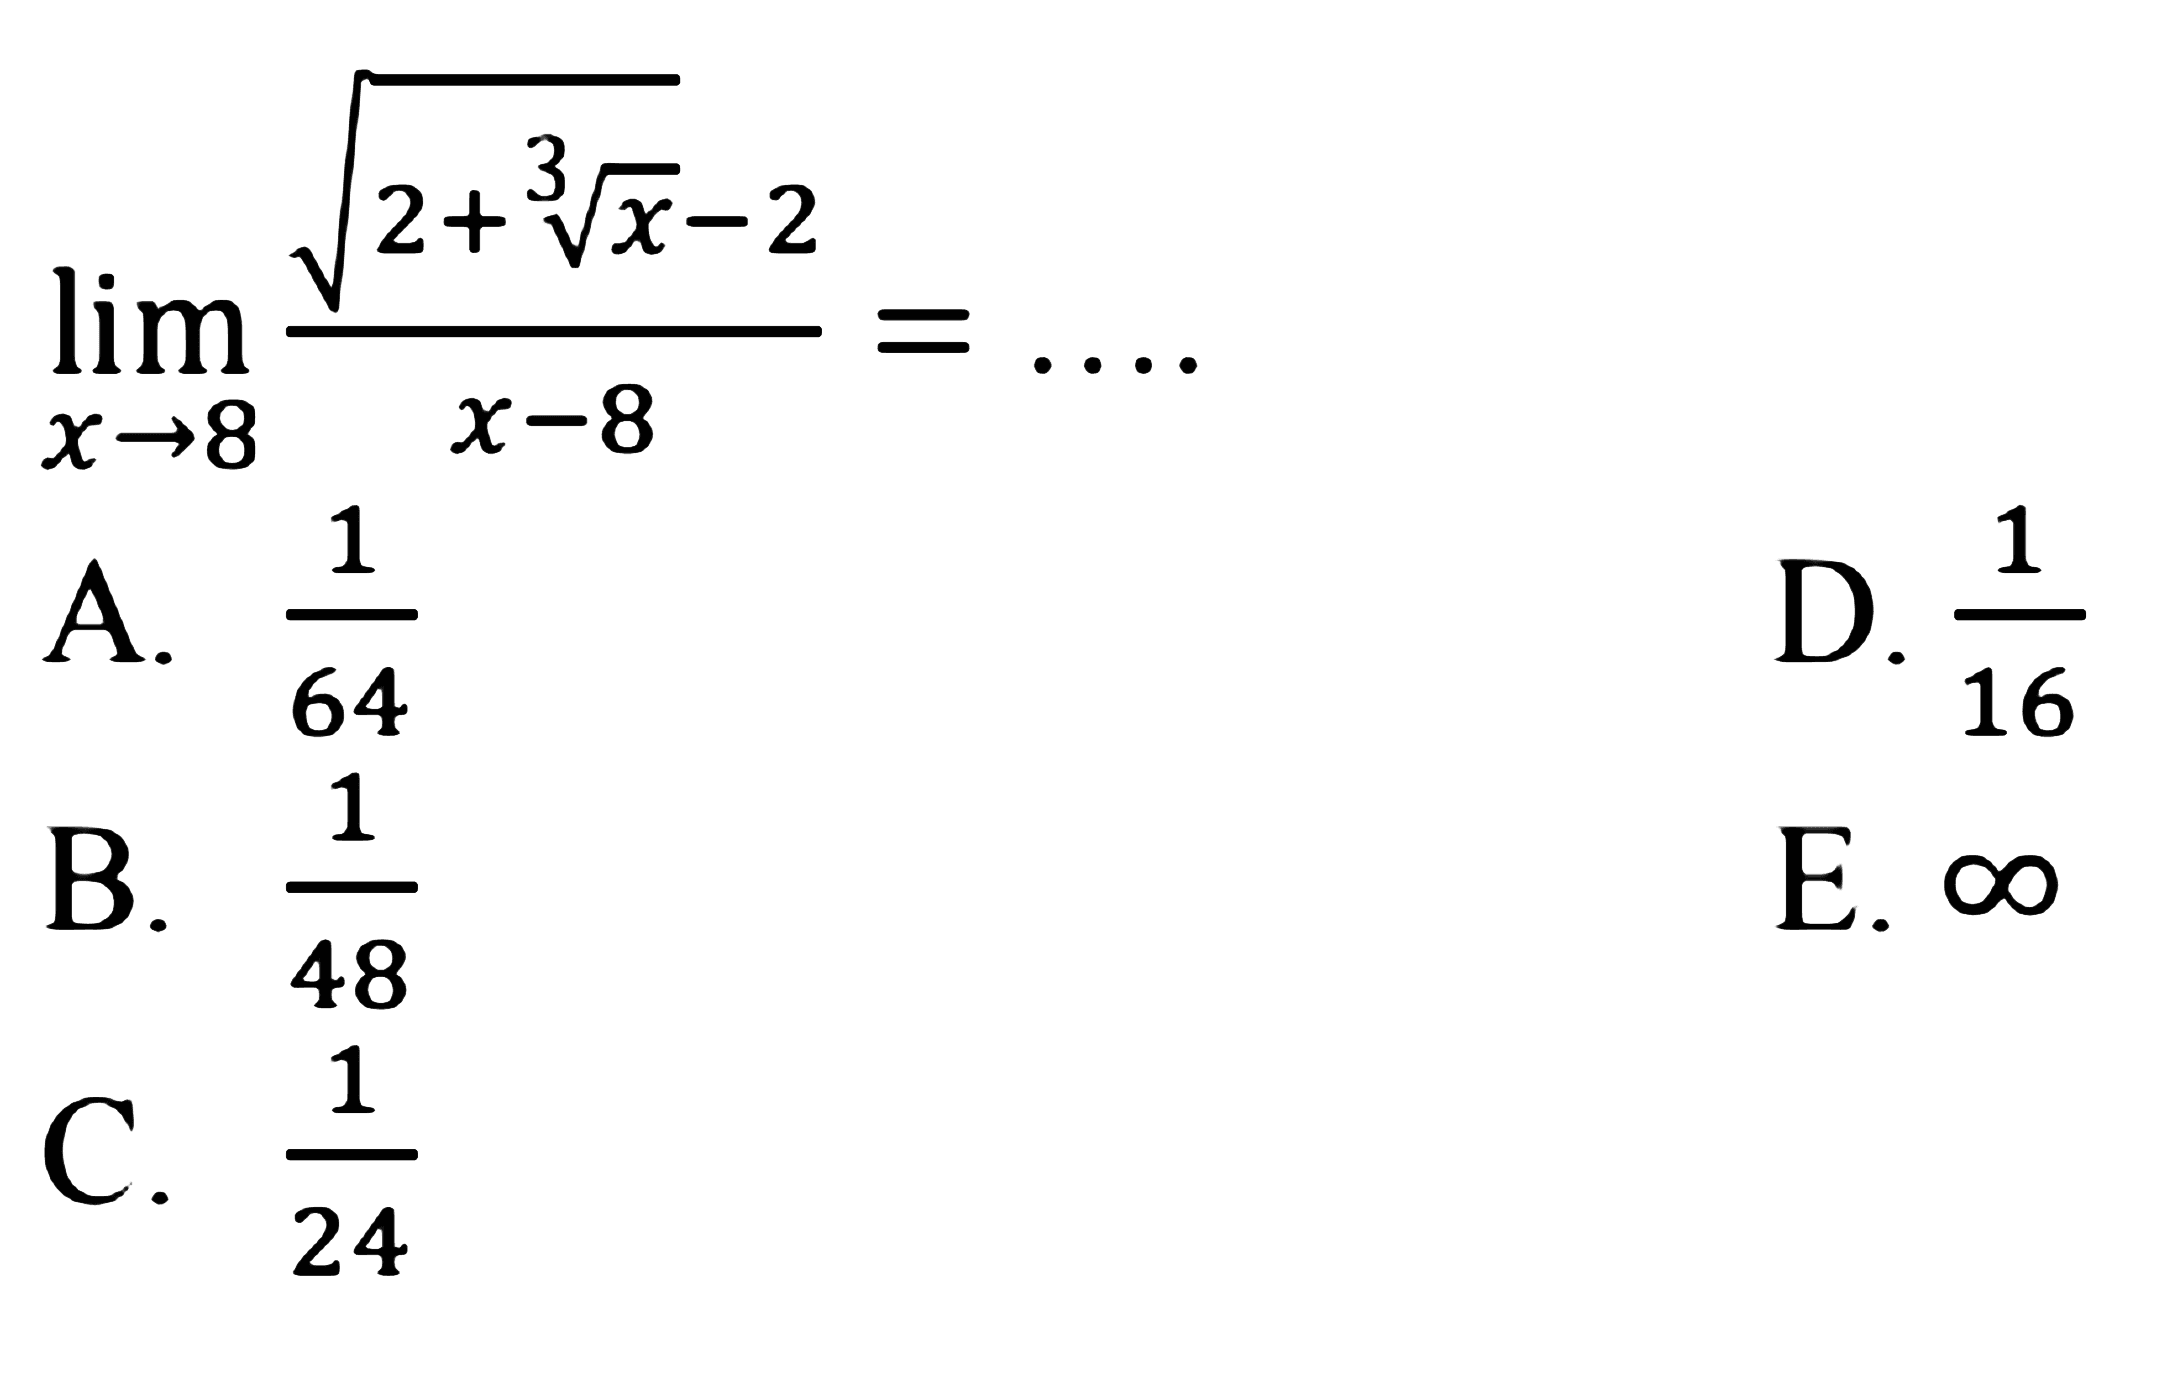 lim x->8 (akar(2+x^(1/3)-2))/(x-8)=...